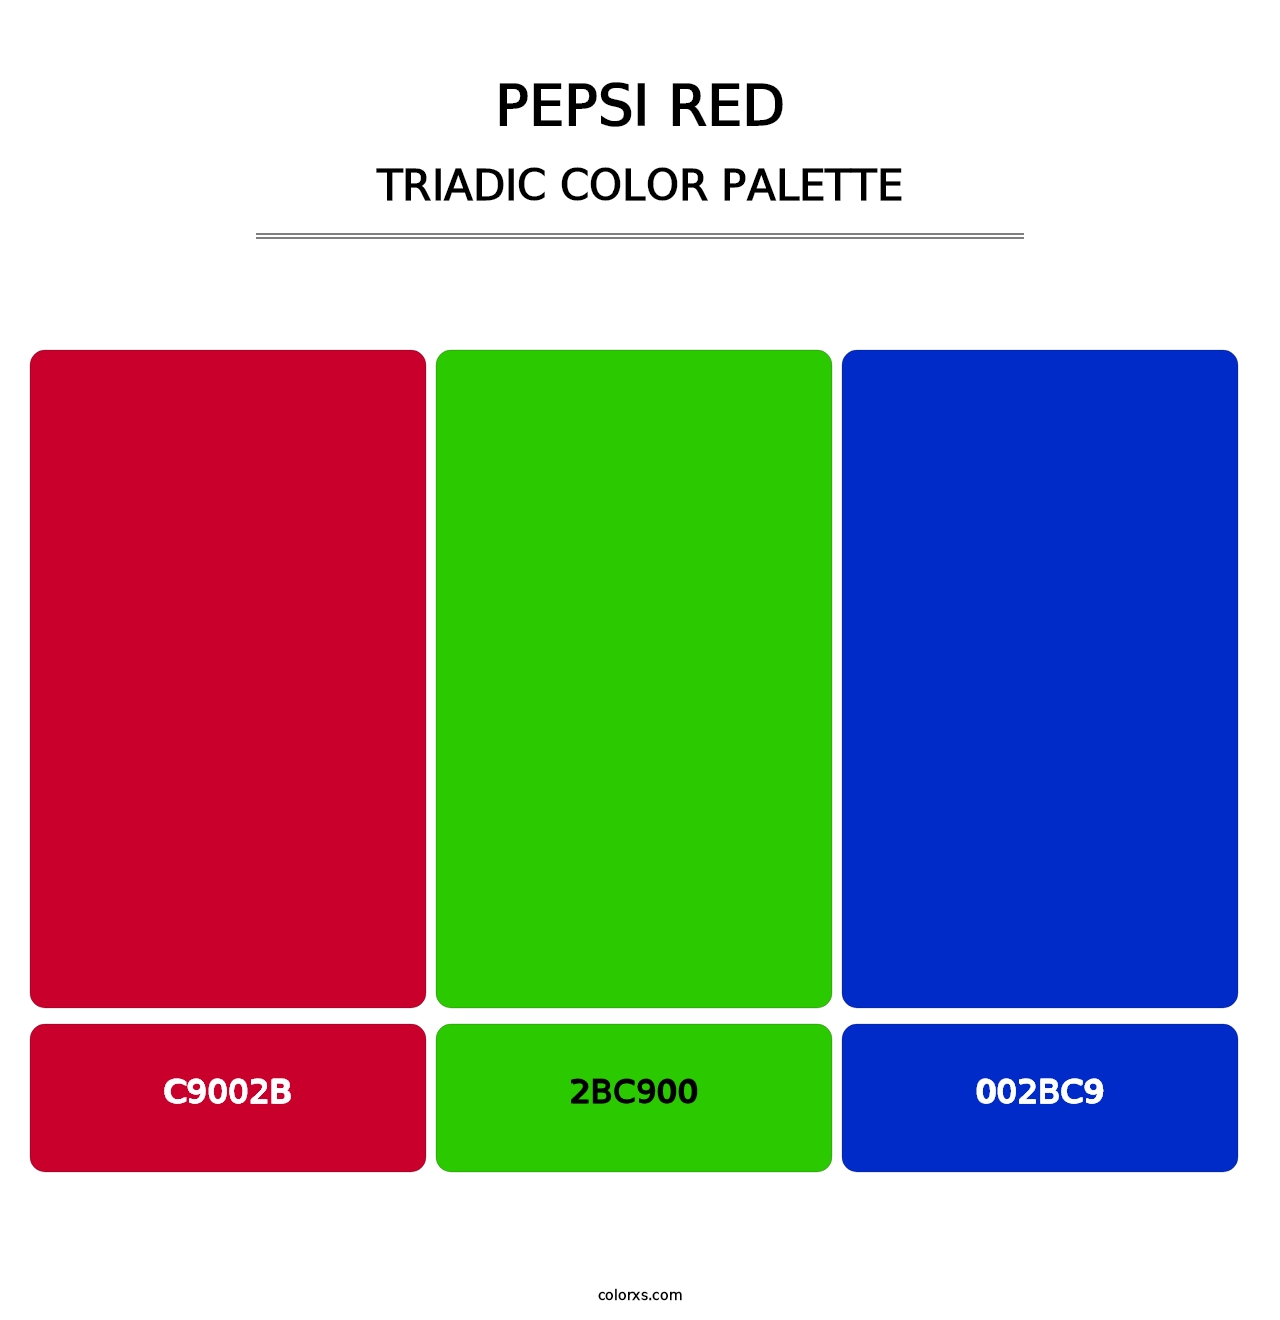 Pepsi Red - Triadic Color Palette